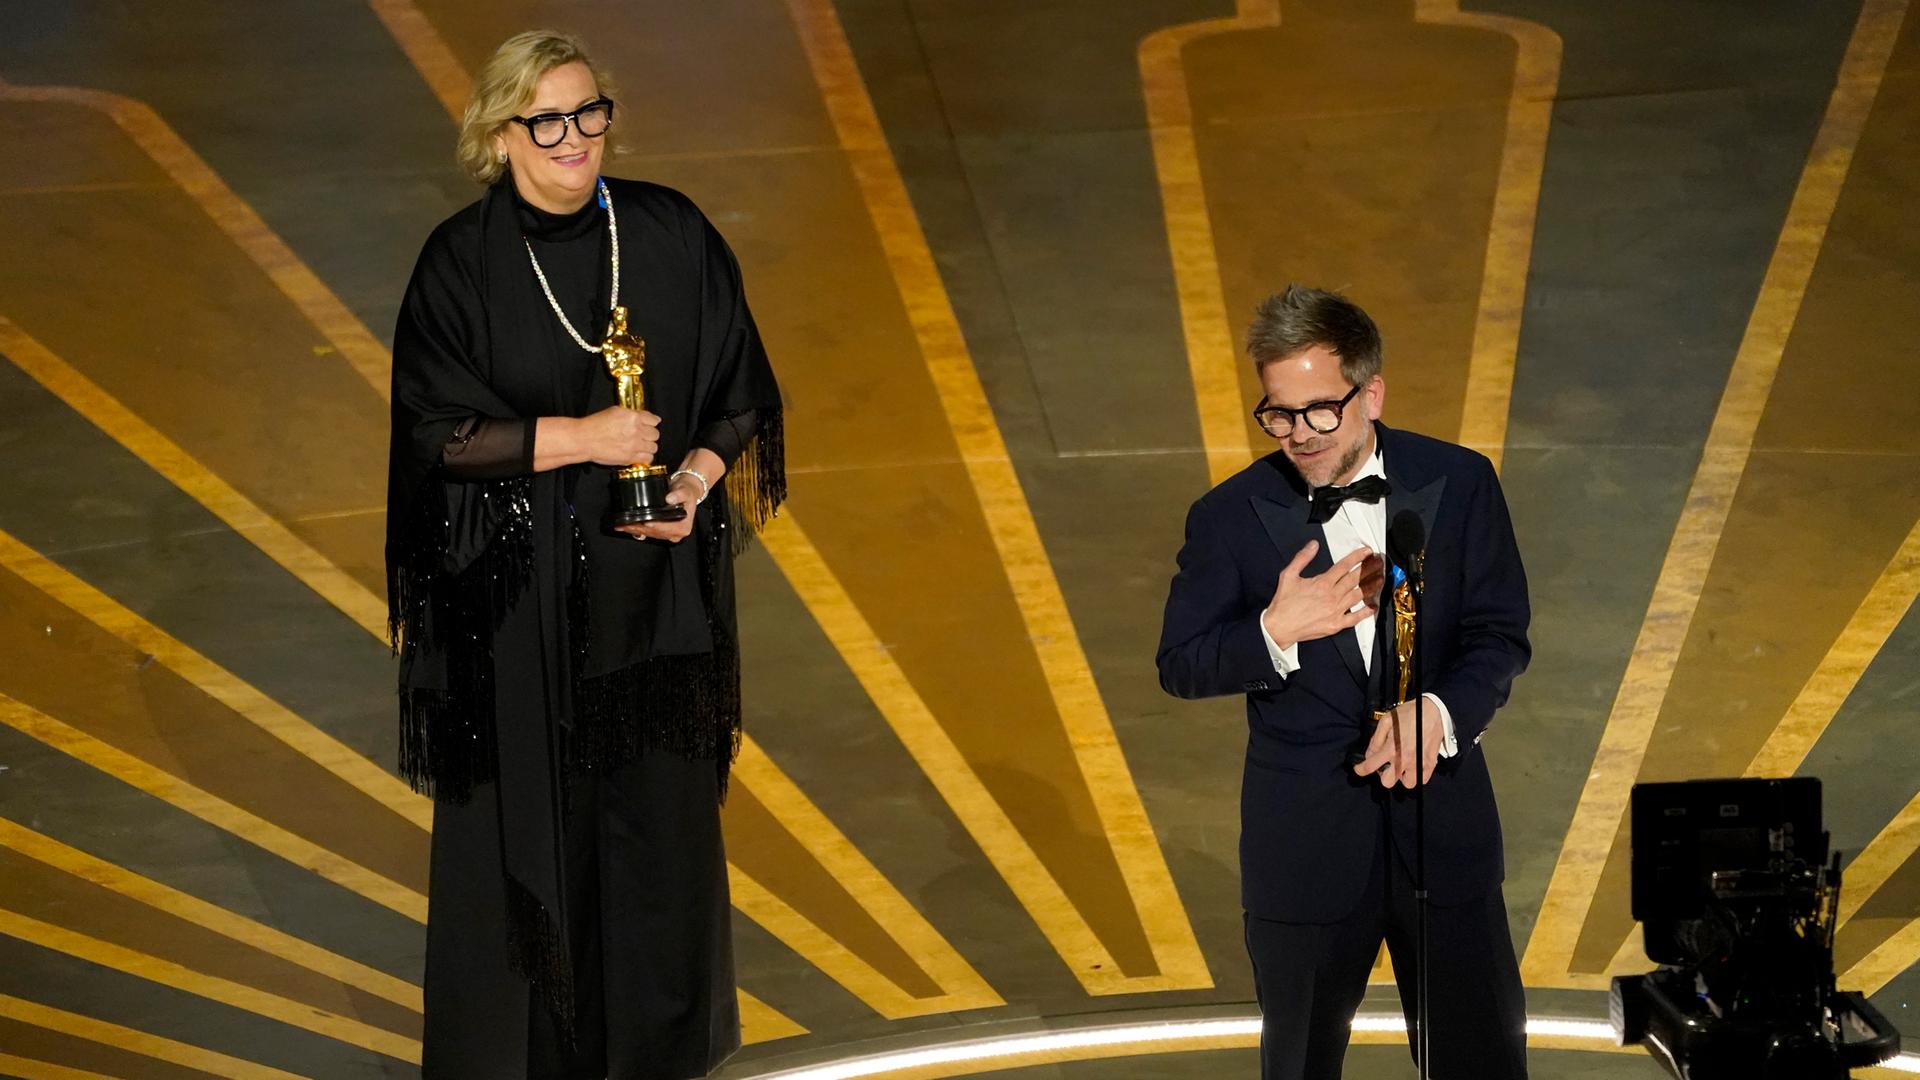 Ernestine Hipper im schwarzen Kleid und Christian M. Goldbeck im Smoking halten jeweils eine goldene Oscar-Statue in Händen.